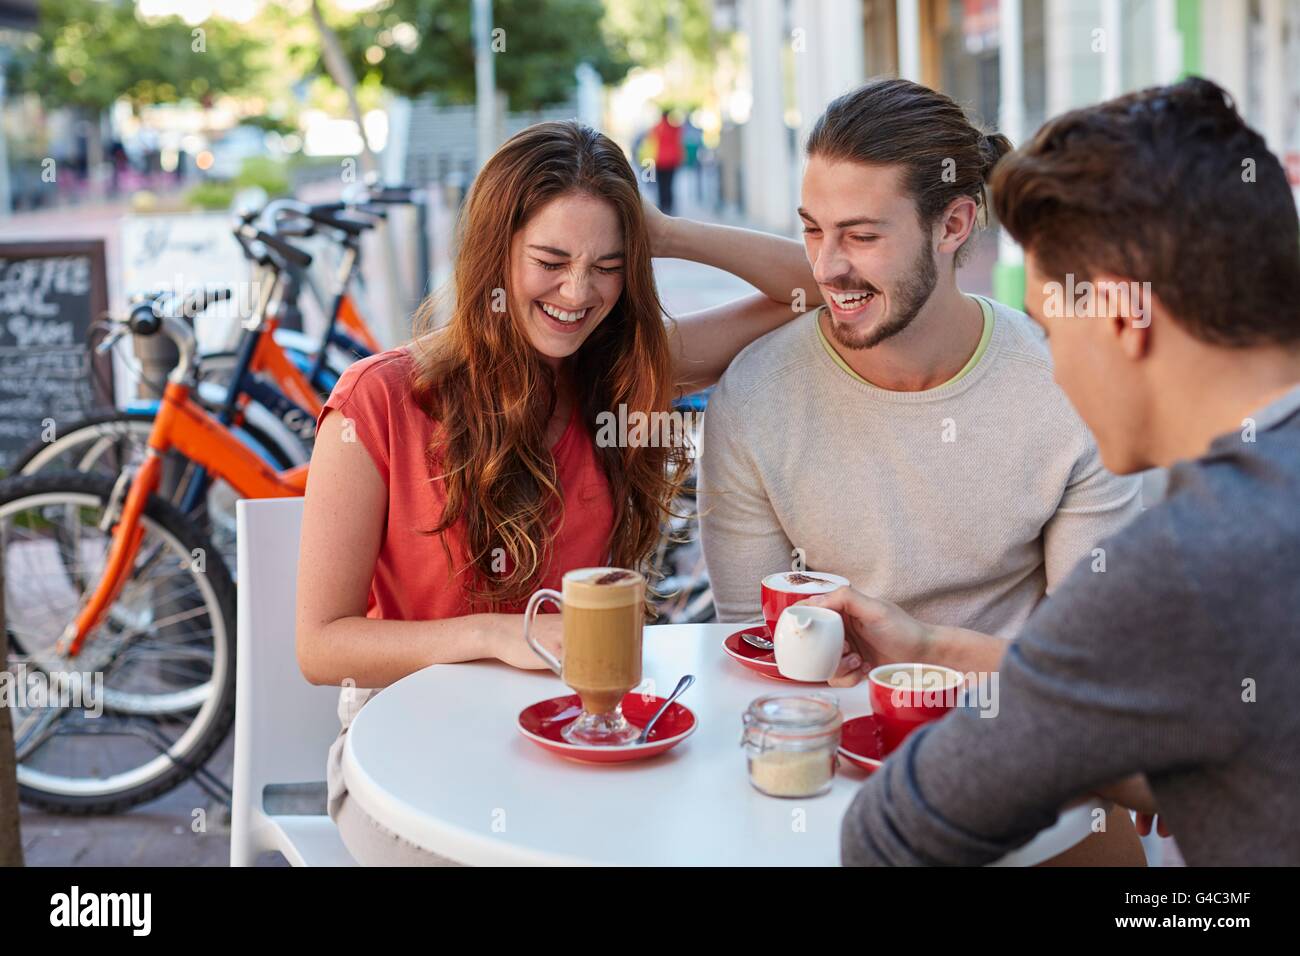 -MODELL VERÖFFENTLICHT. Drei jungen Freunden im Café mit heißen Getränken, lächelnd. Stockfoto